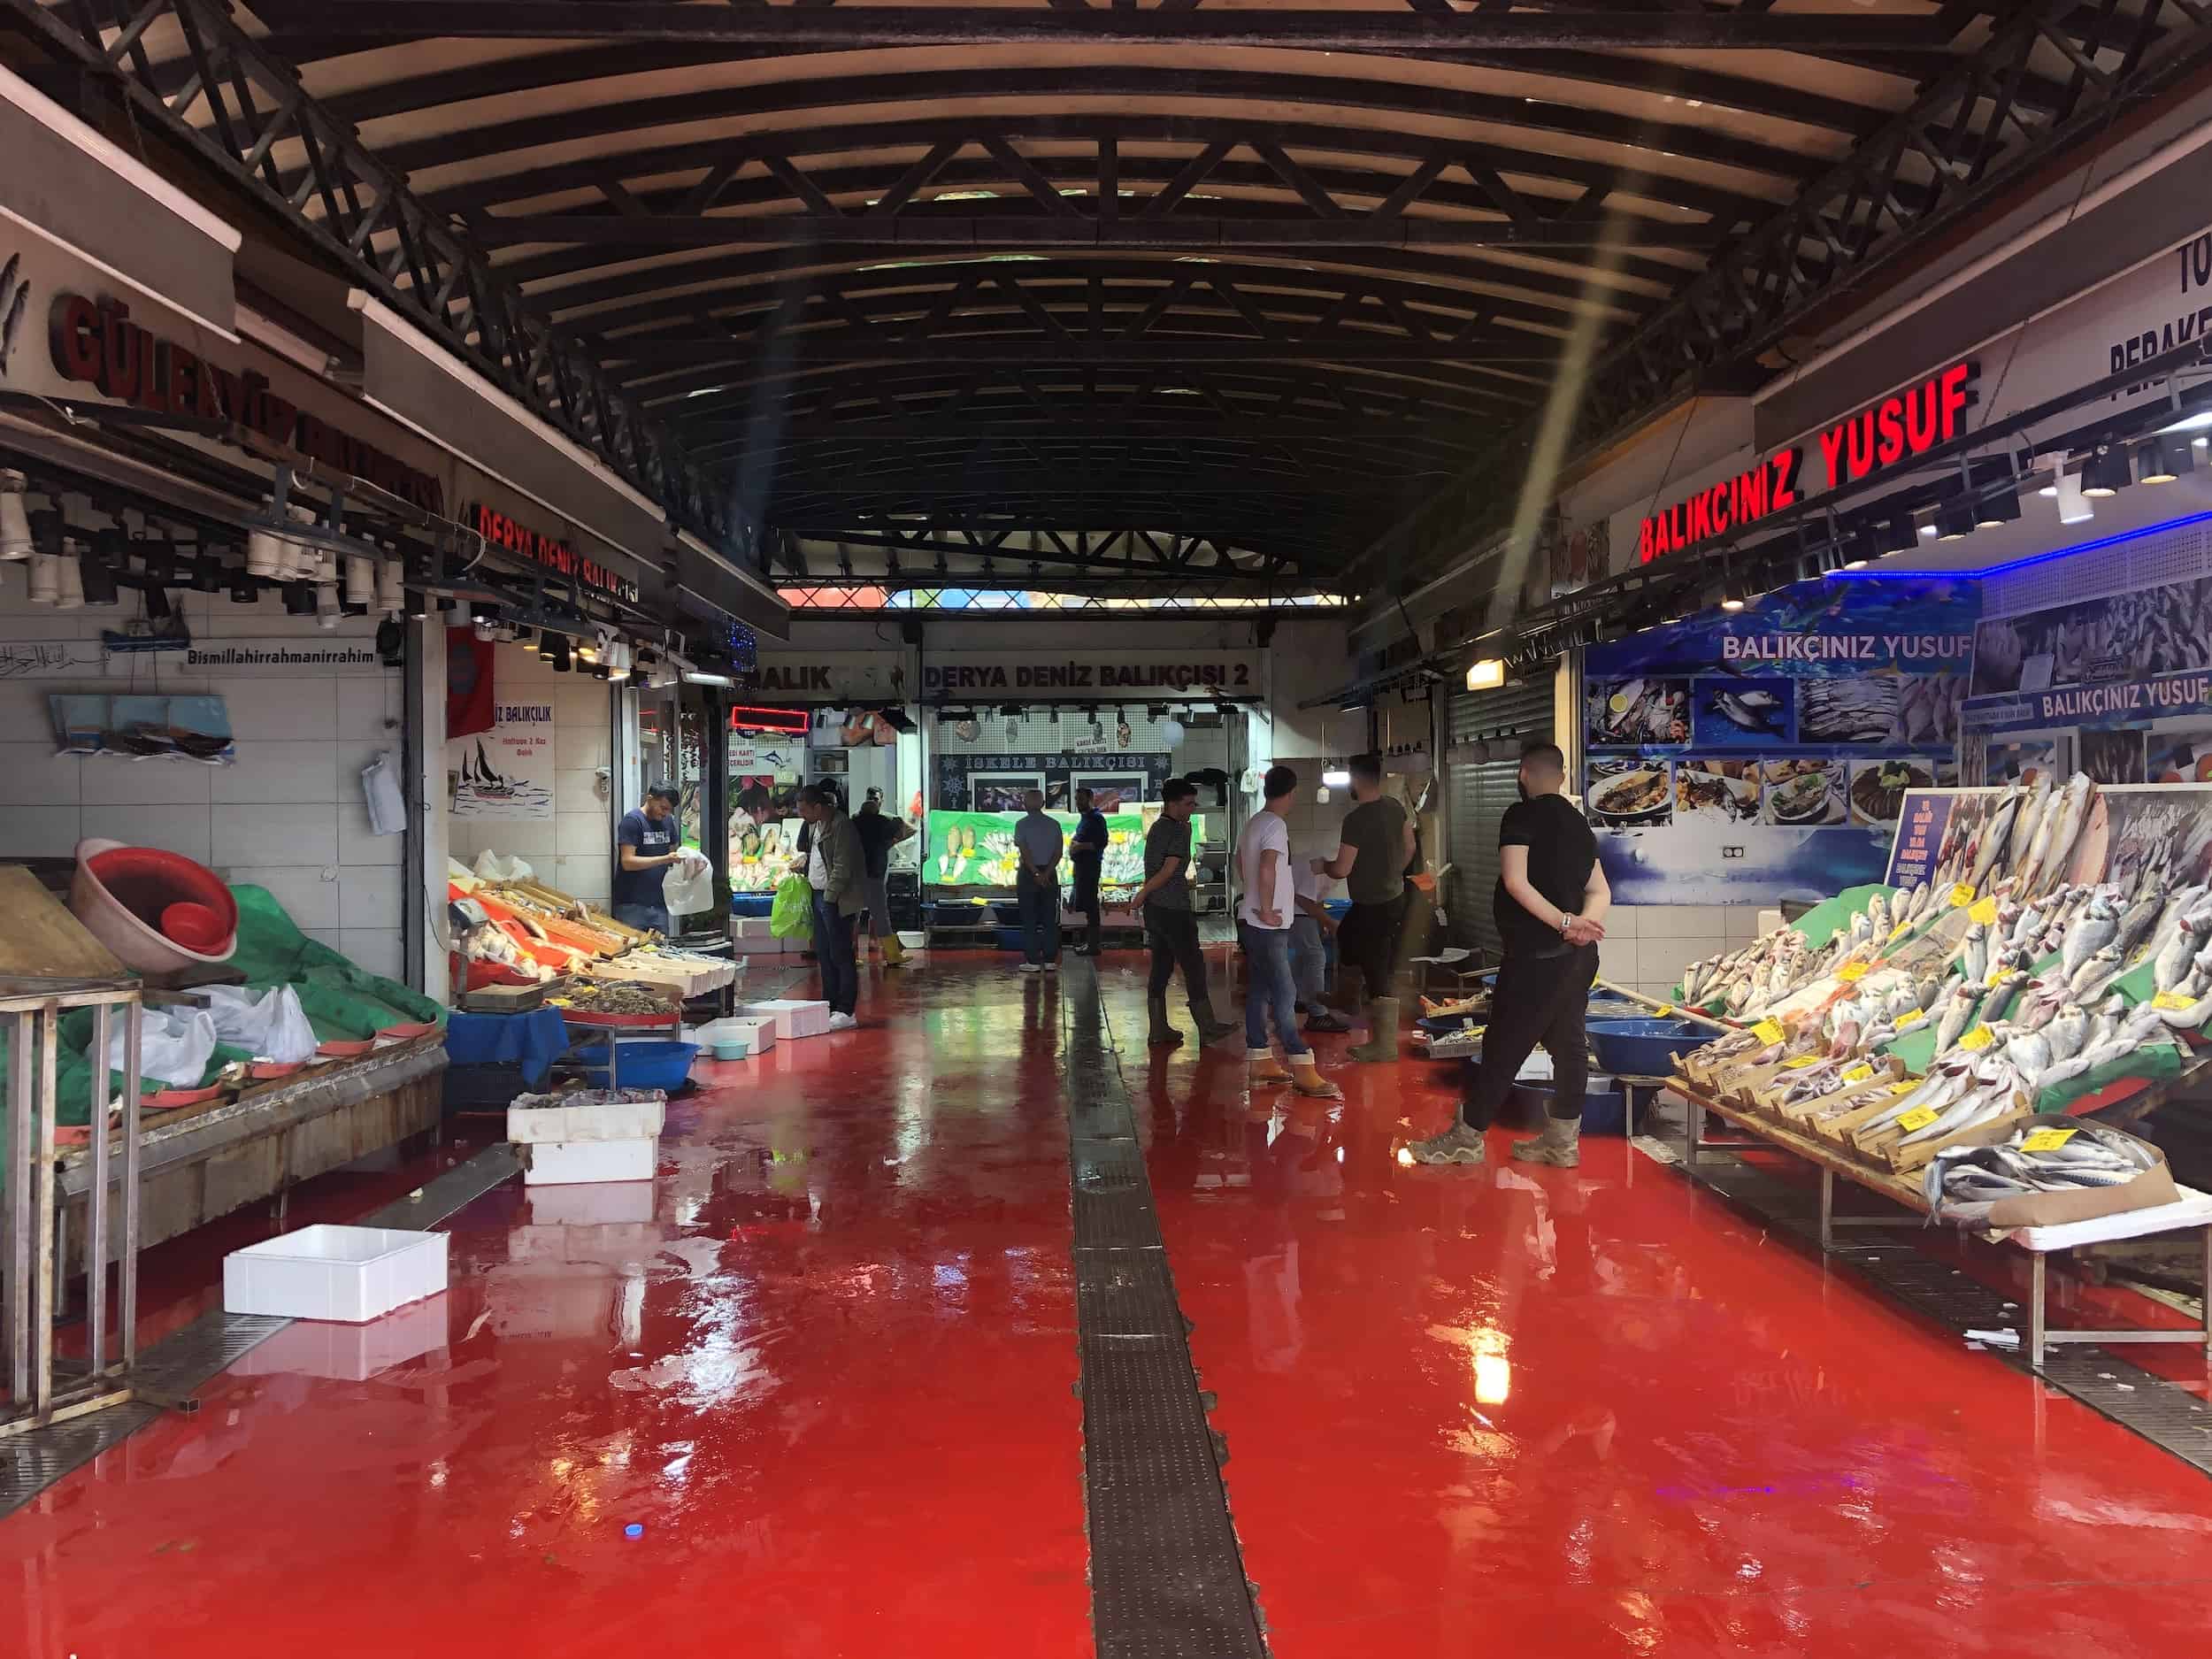 Karaköy Fish Market near Karaköy Square in Karaköy, Istanbul, Turkey